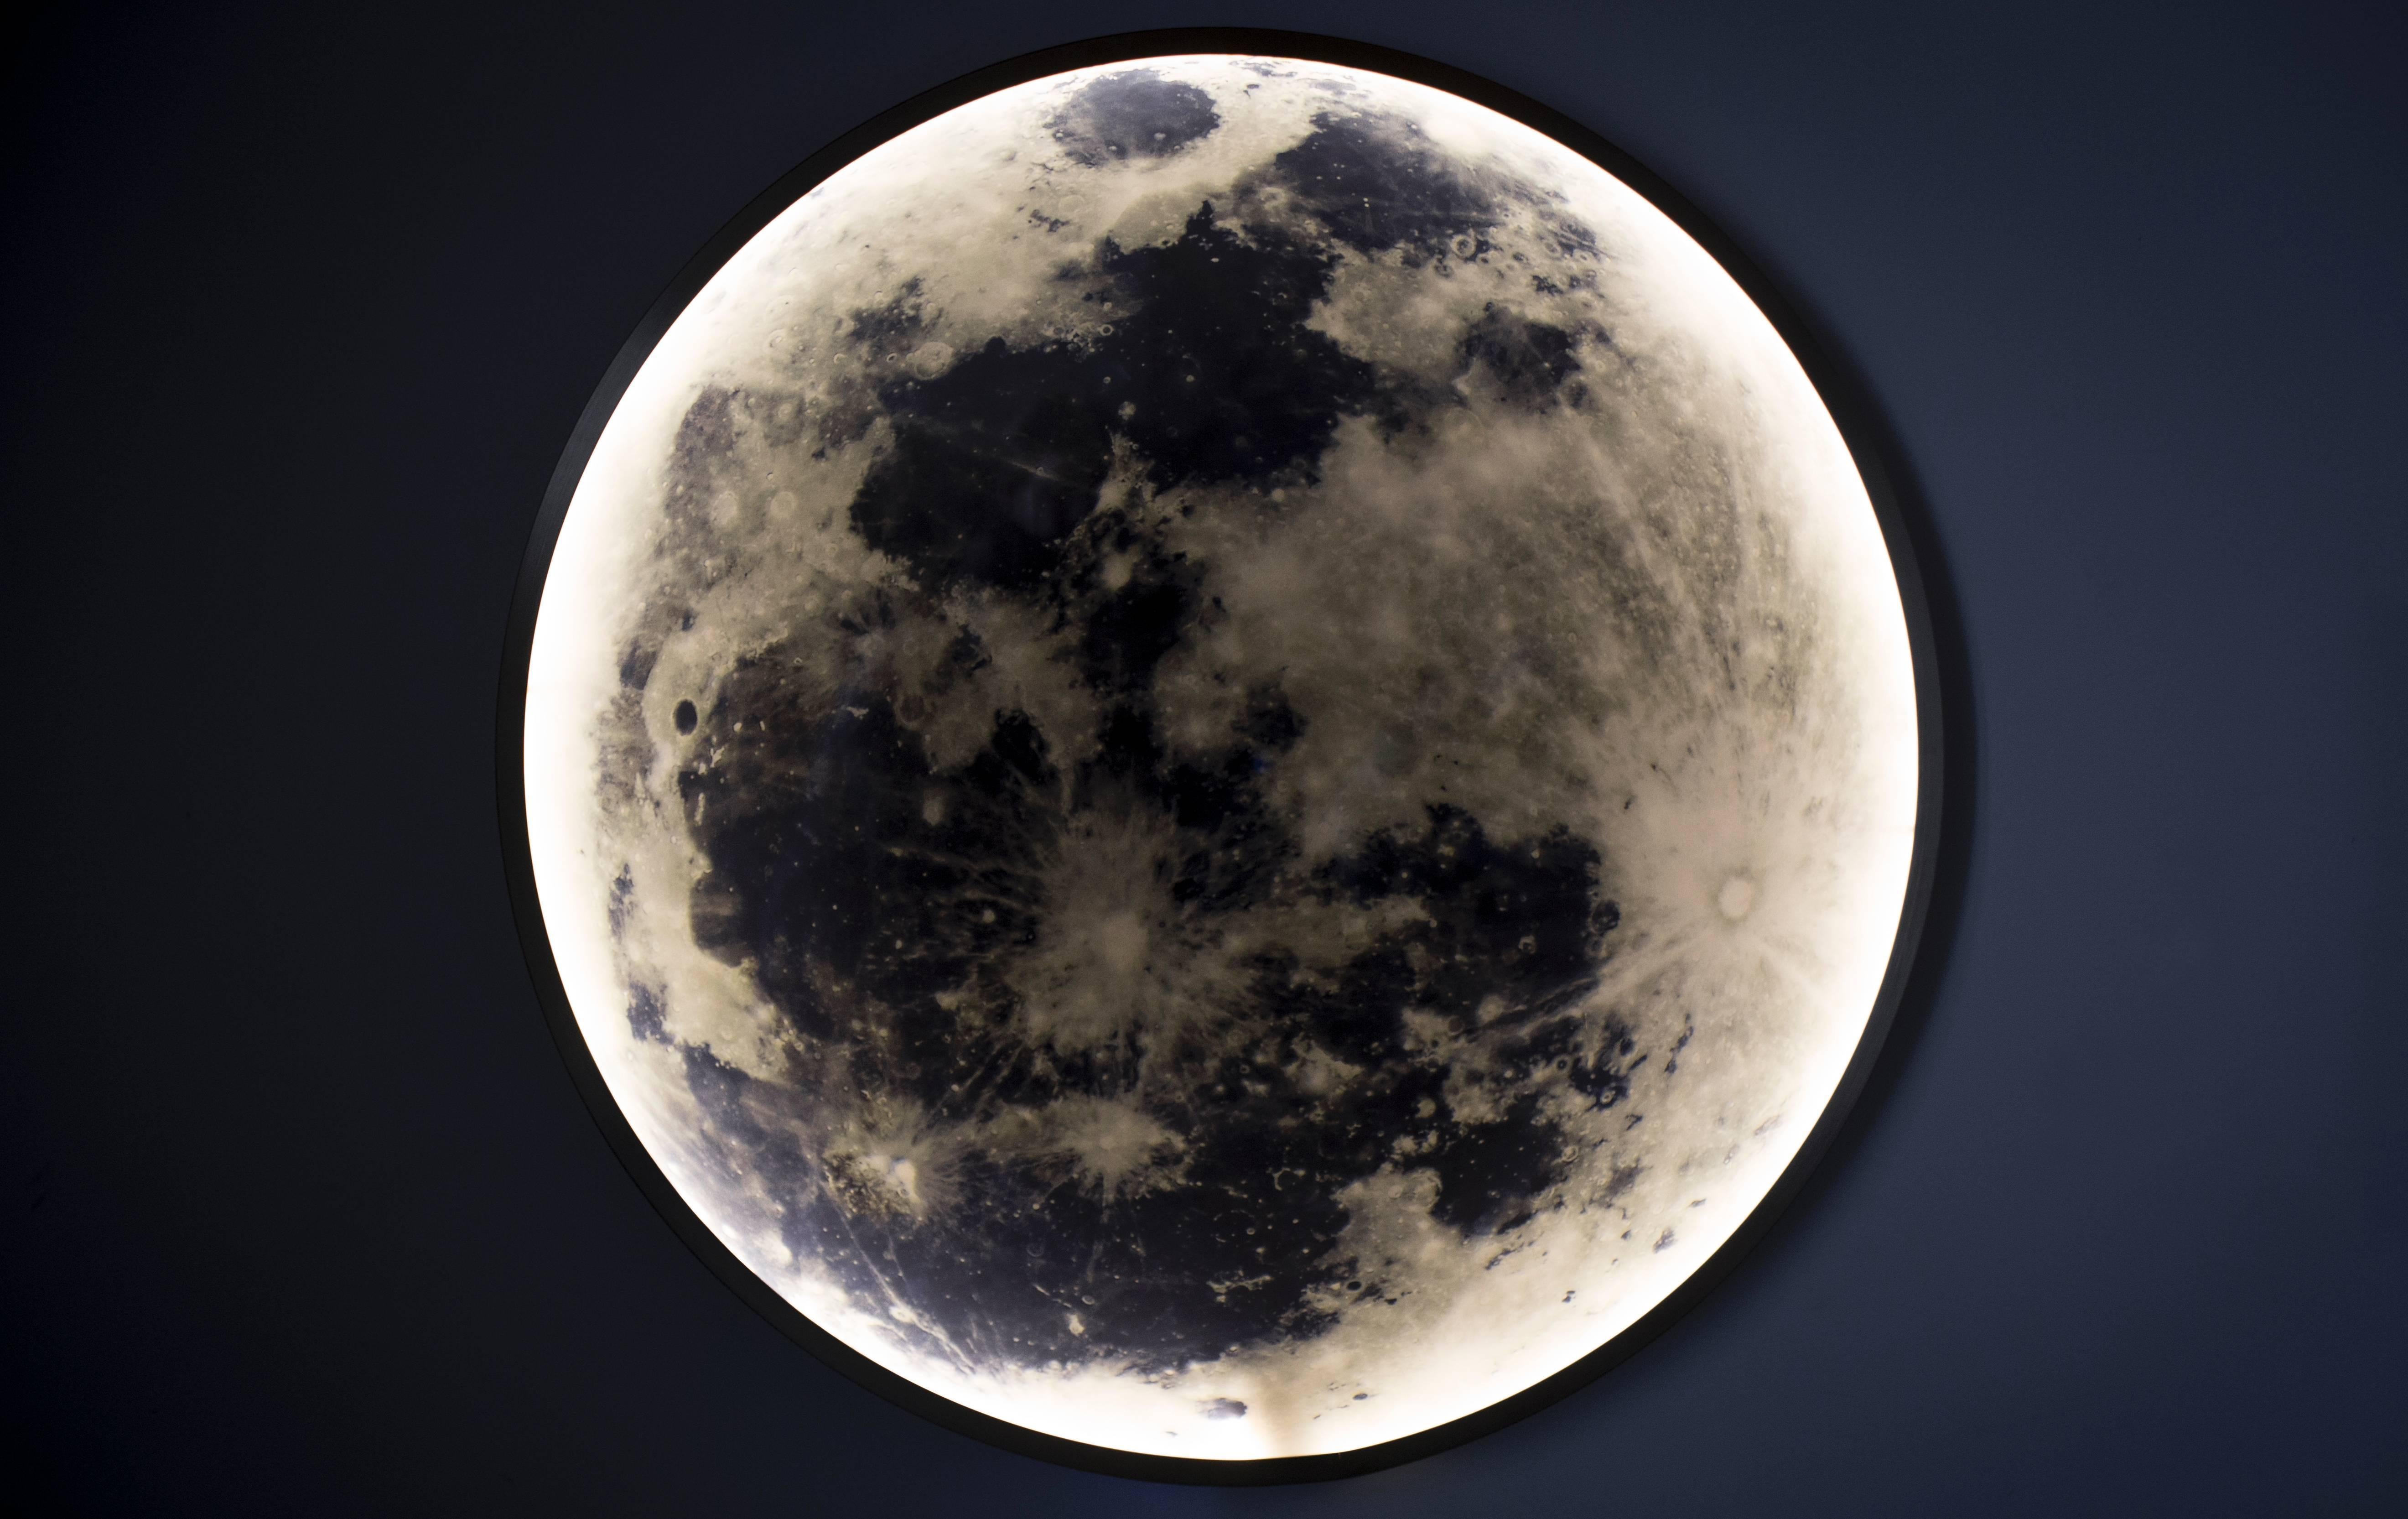 Das in massiver Bronze oder Stahl gerahmte Bild des Mondes wird von innen beleuchtet und von Glas umschlossen, so dass ein Werk entsteht, das als Licht, Skulptur und Bild zusammenhängt. Das Moon Light bietet dimmbares Umgebungslicht in einer